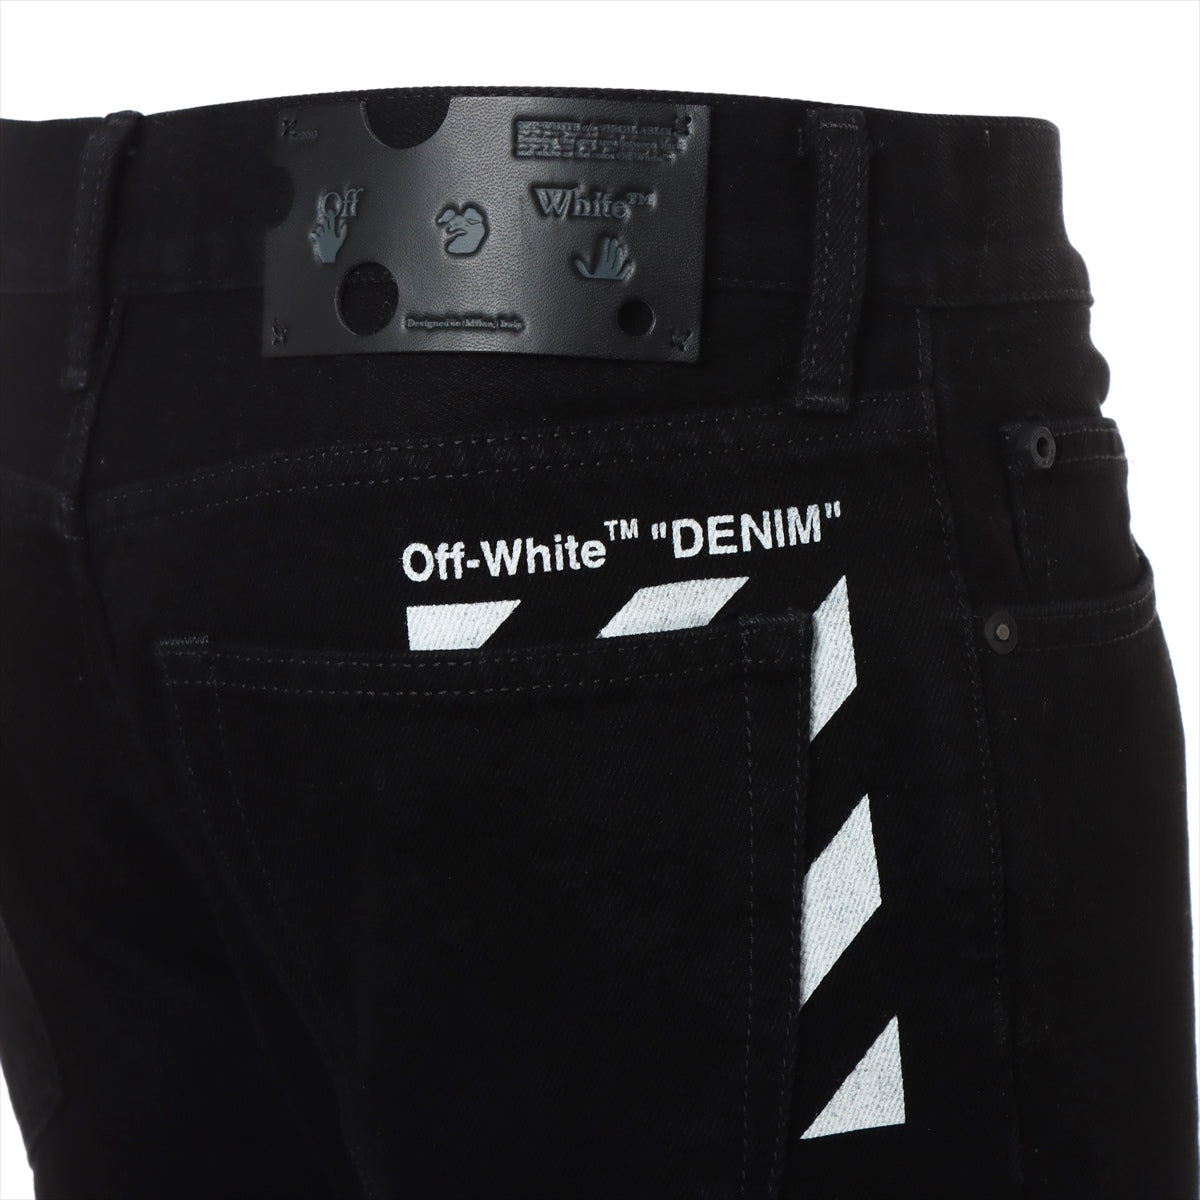 Off-White Cotton & polyester Denim pants 30 Men's Black  OMYA074F21DEN001